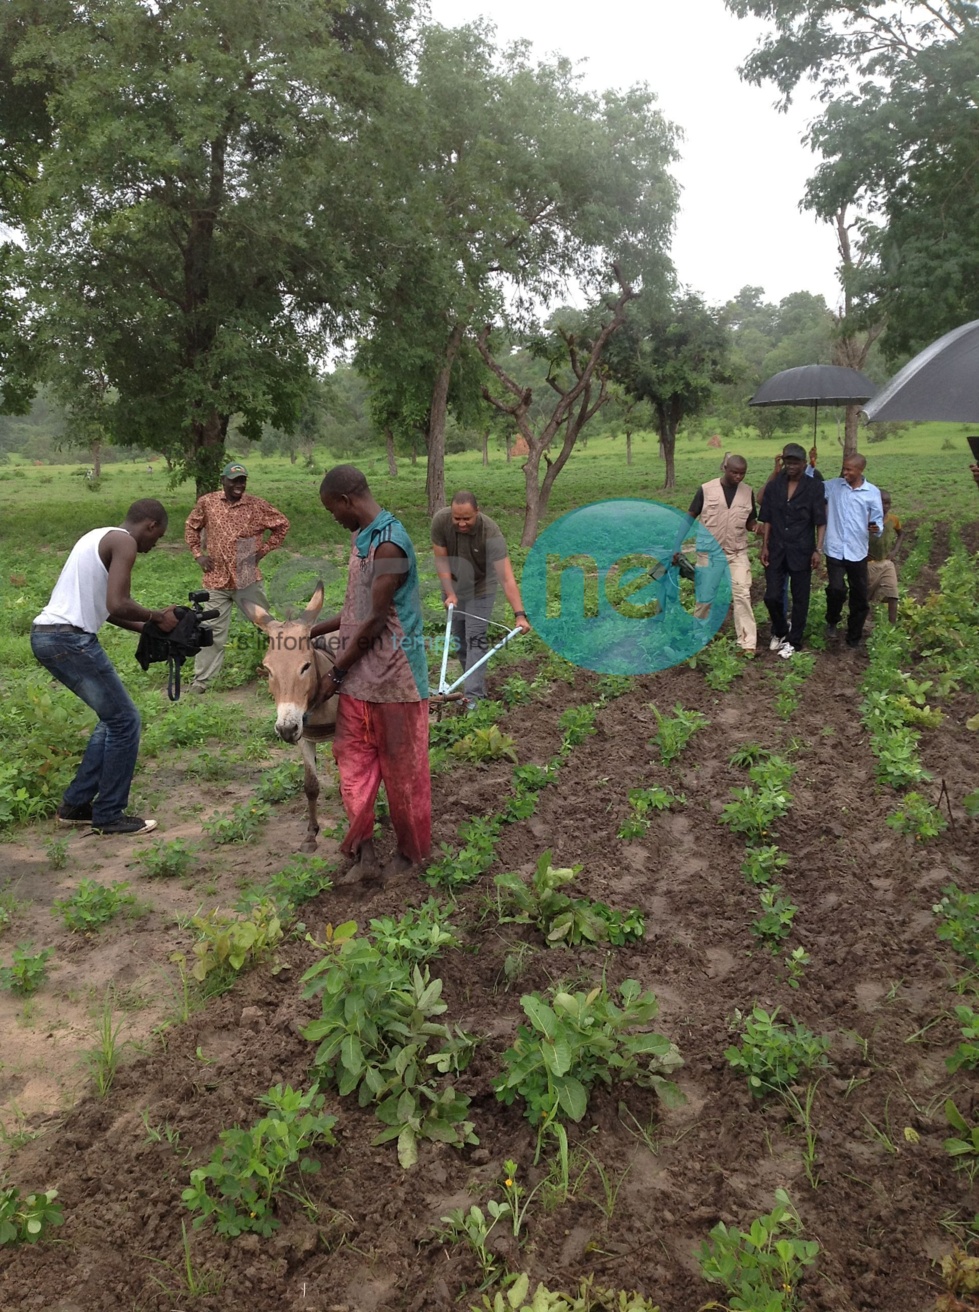 Le ministre Abdoulaye Baldé Bibi montre ses talents de cultivateur